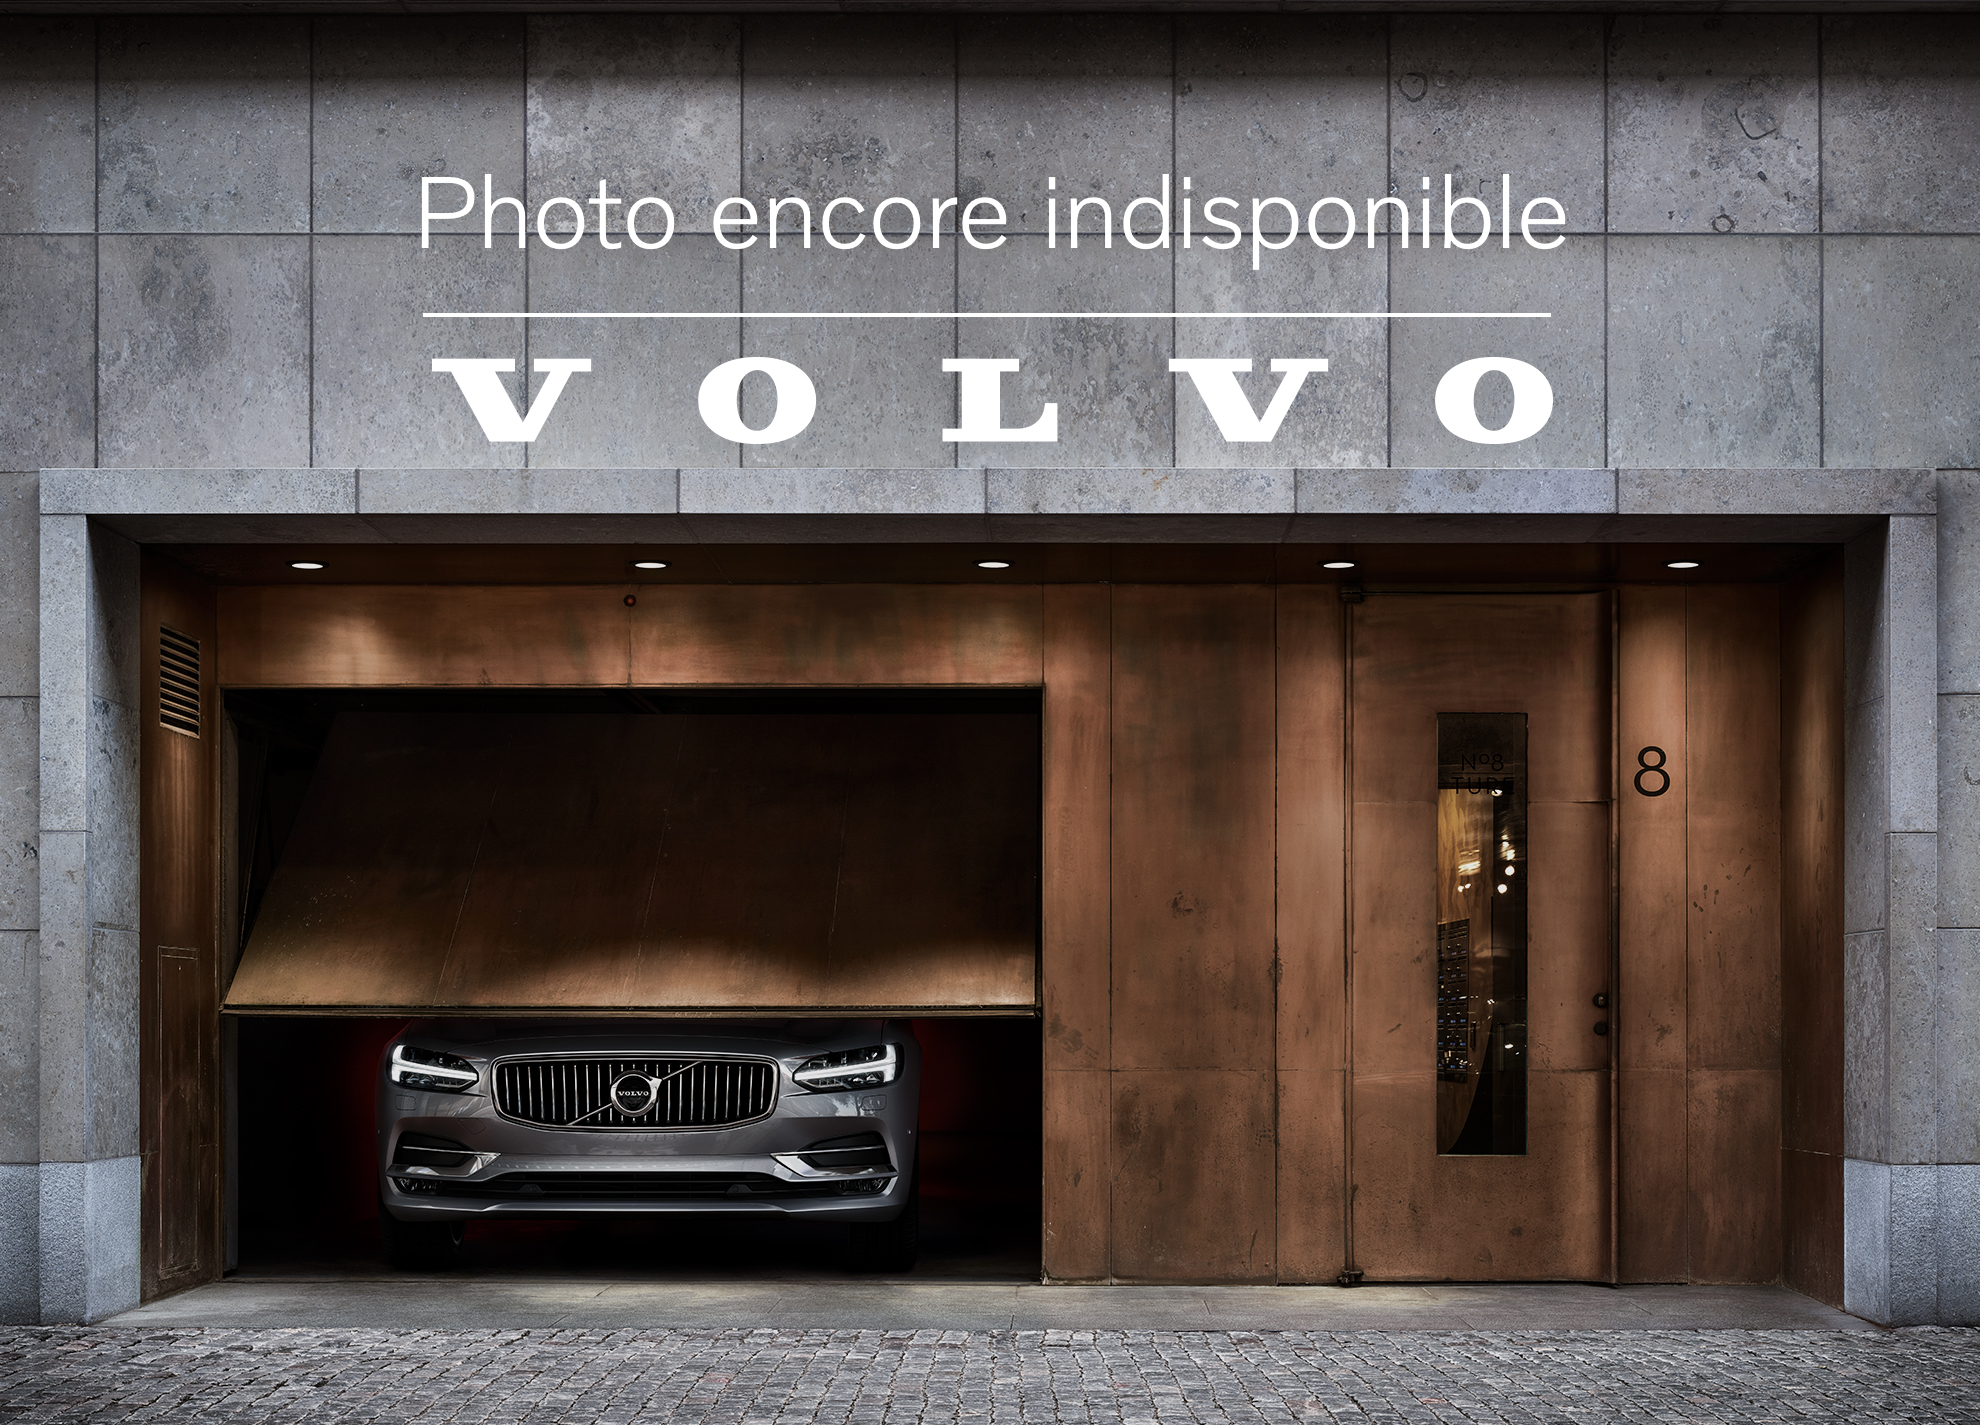 Volvo  B5 AWD Plus - Bright